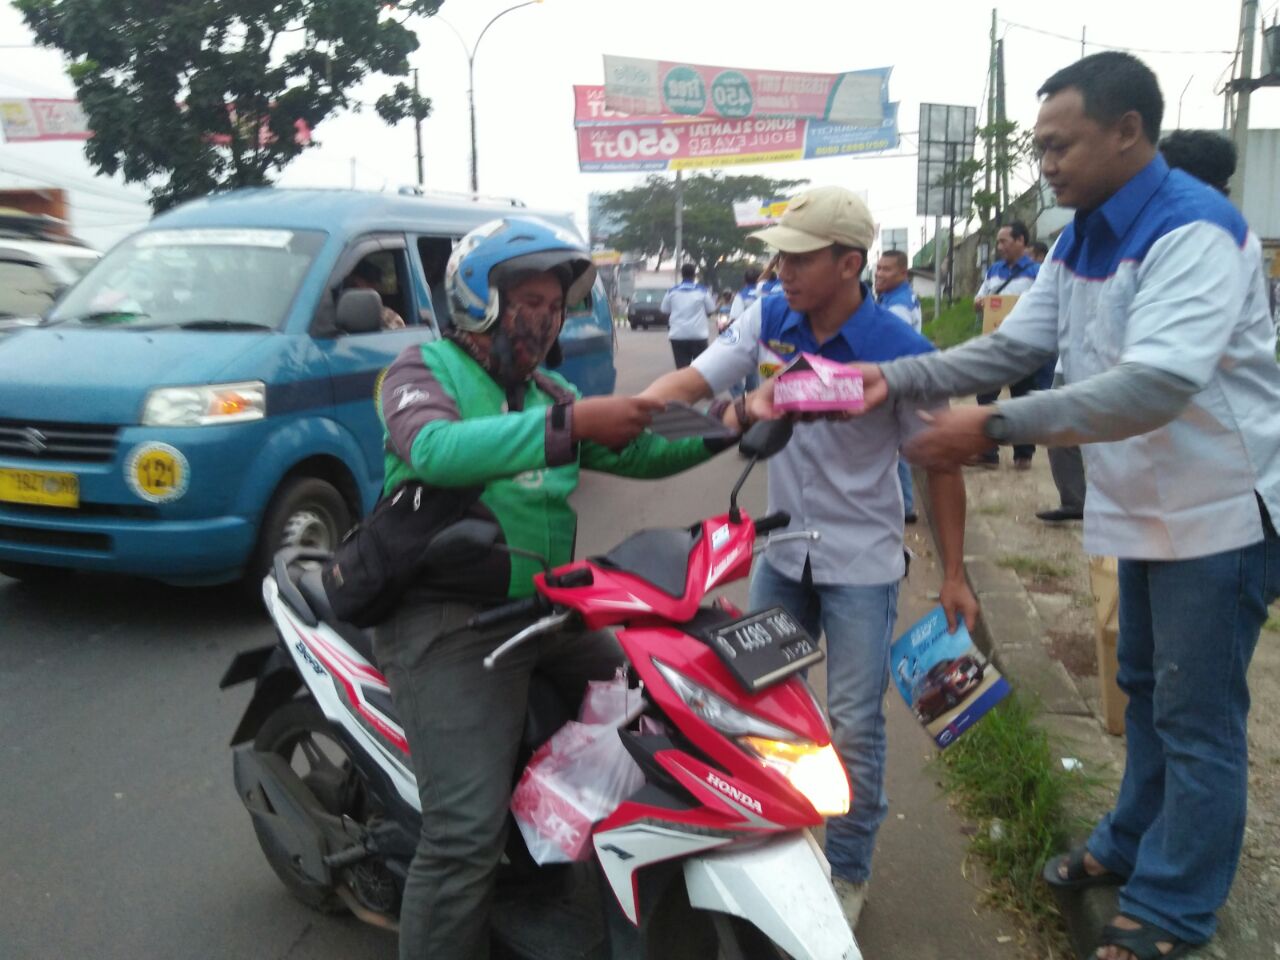 Foto : Para Member DGCI Paten Bogor membagikan Takjil Gratis kepada para pengendara kendaraan di seputaran Cibubur